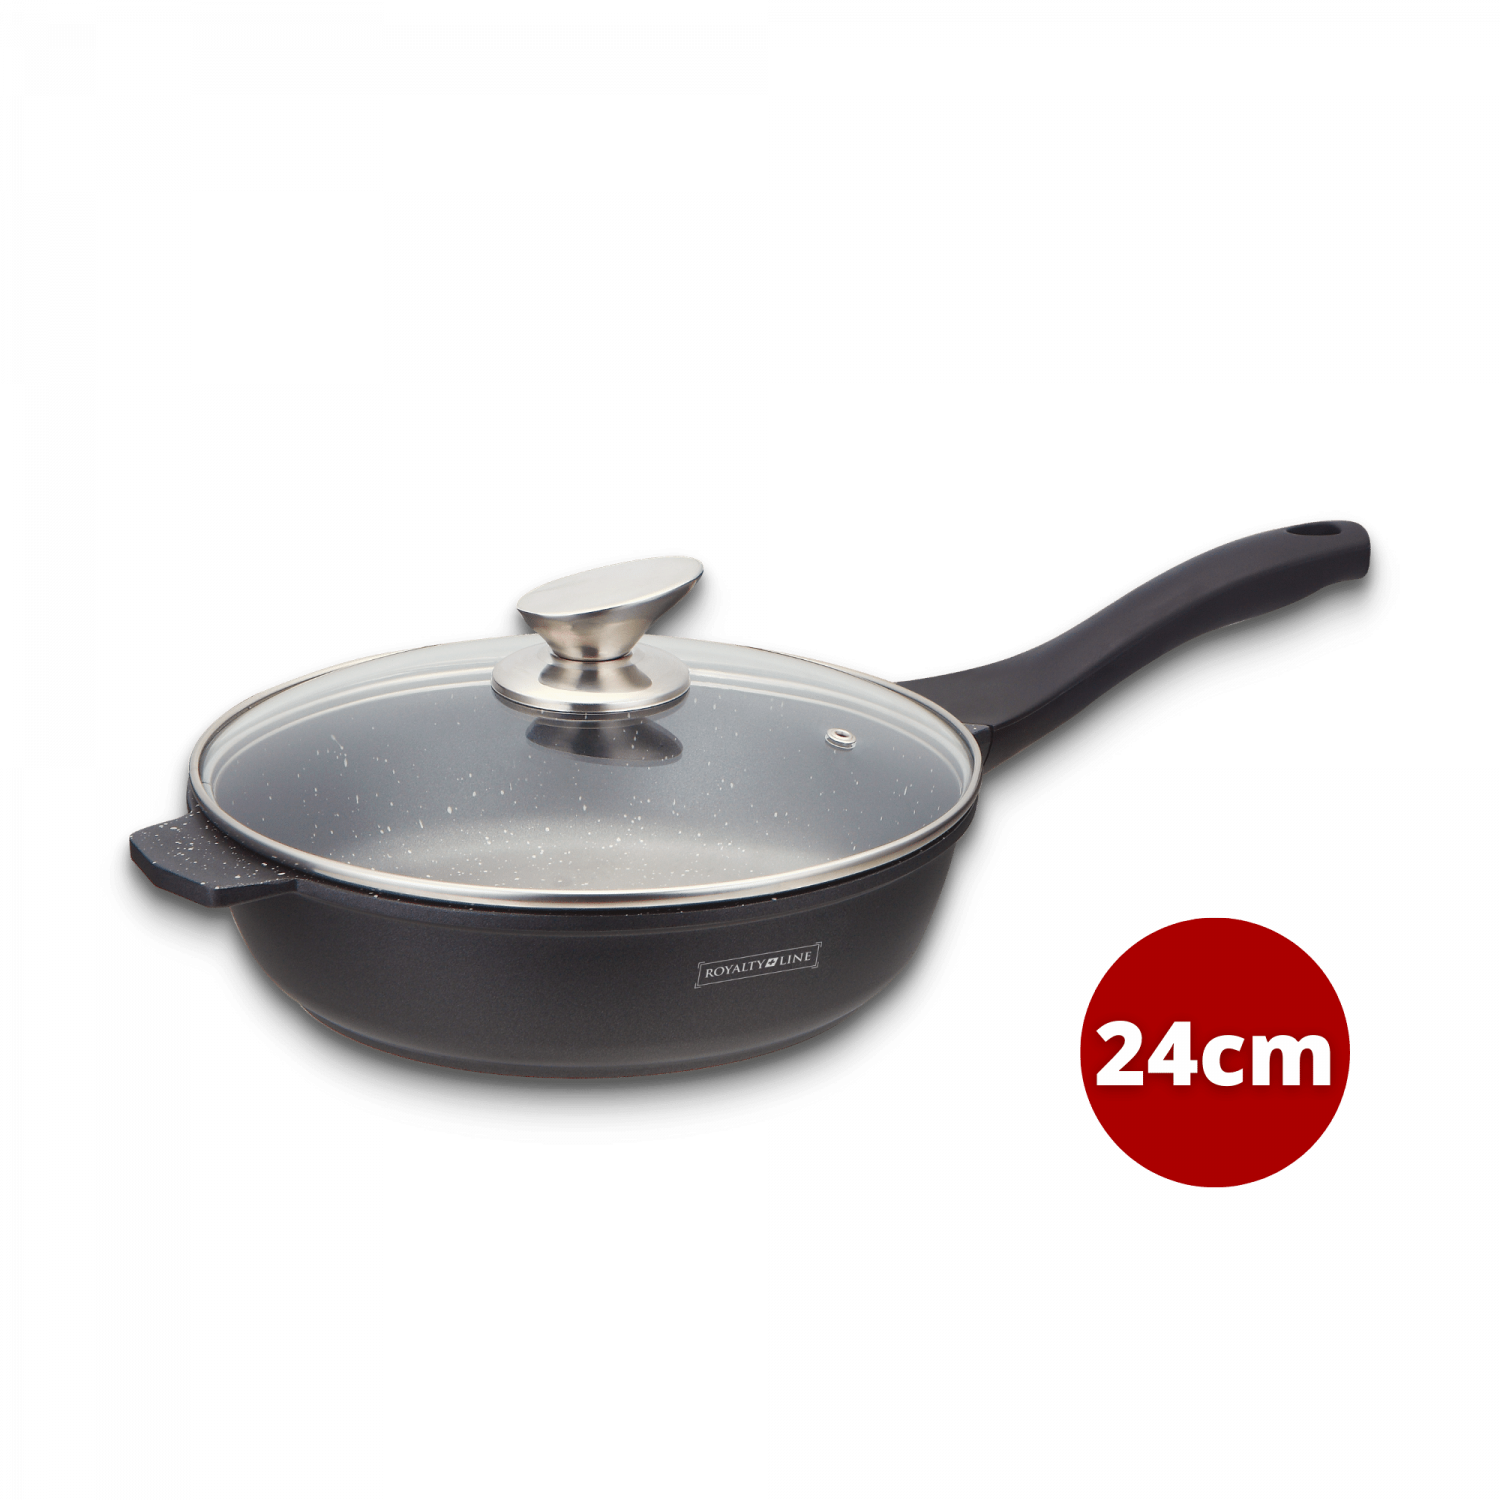 wholesale, dropshipping, supplier in Europe, b2b, frying pan, saucepan, cooking pan, wholesale pan